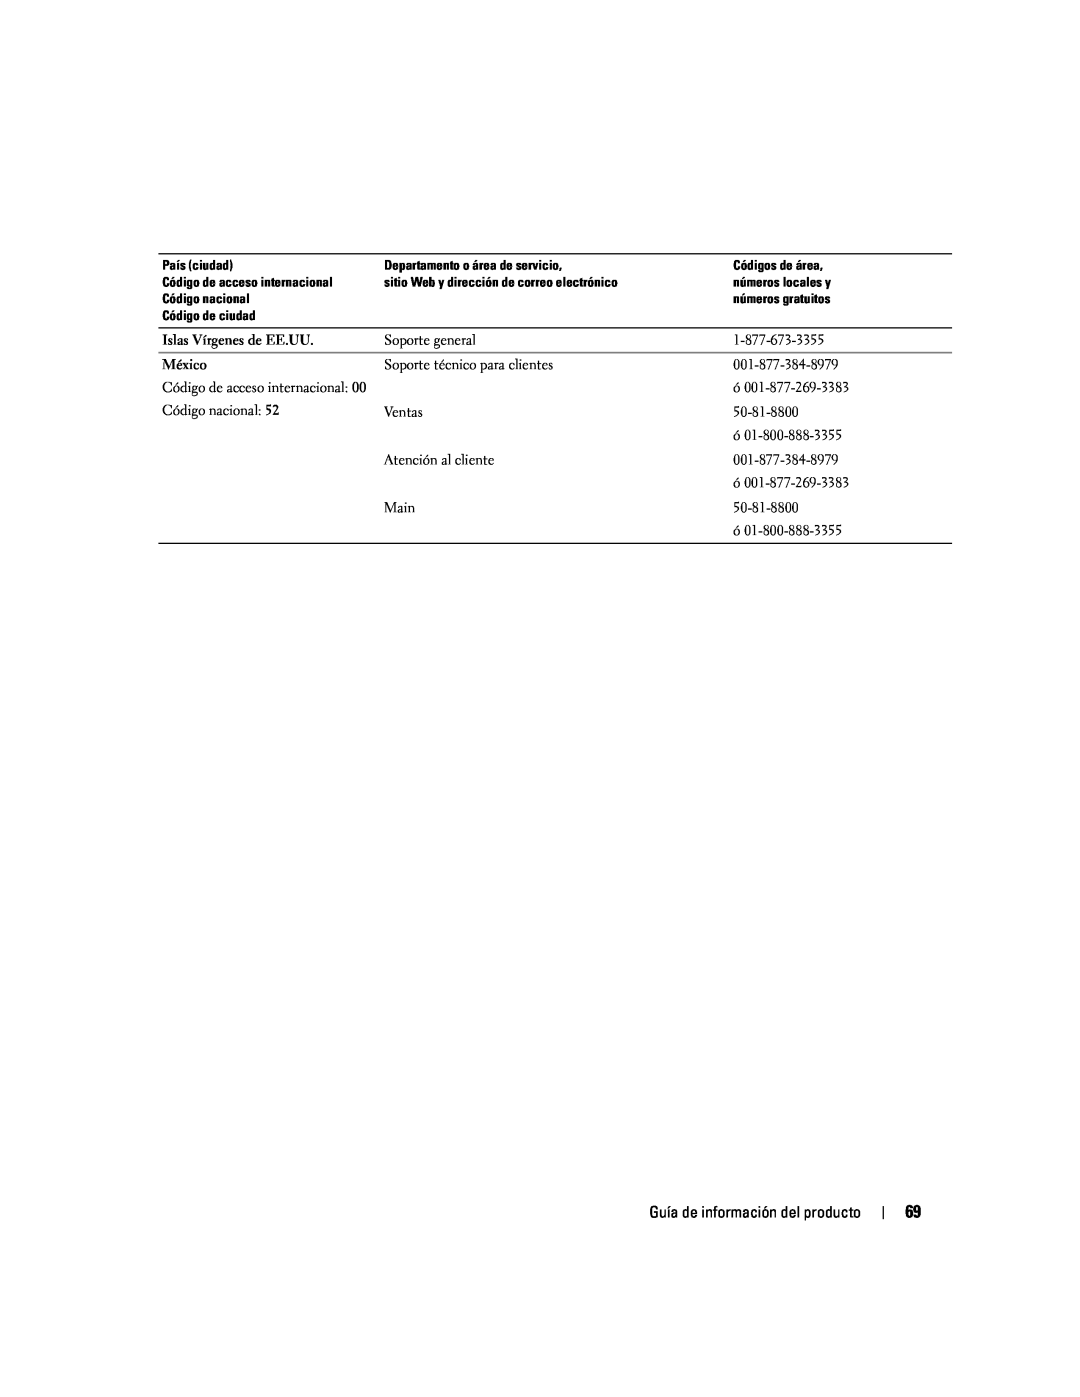 Dell W4200 manual Guía de información del producto, Islas Vírgenes de EE.UU, México 